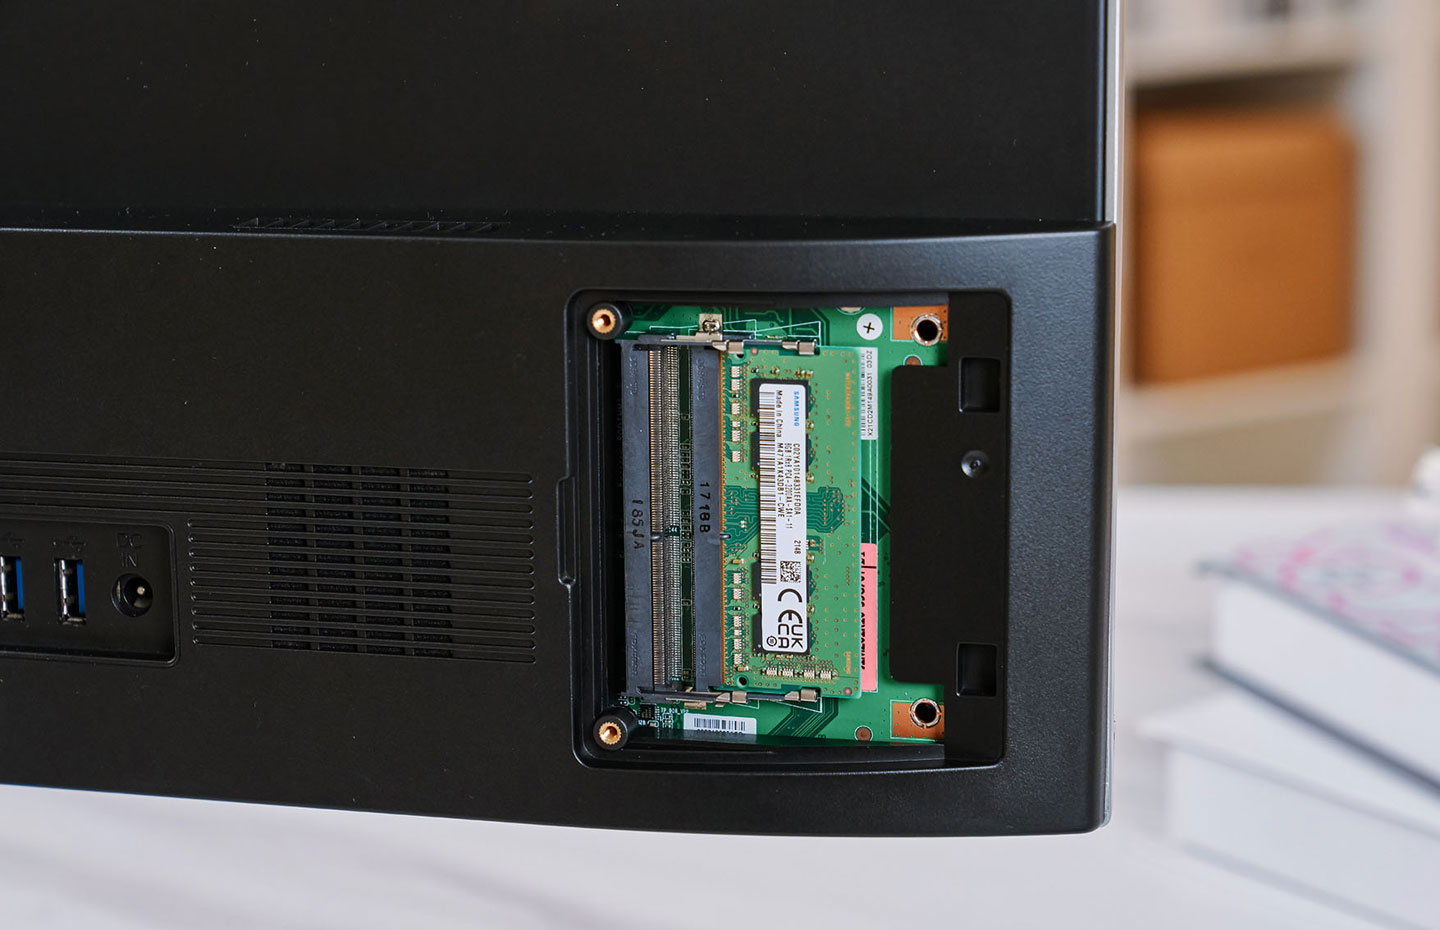 機身後方右側的外蓋開啟可看到記憶體擴充槽，提供了兩組電規格的 SO-DIMM 插槽，其一組已預裝了 8GB 的 DDR4 記憶體，未來使用者也能自行升級。